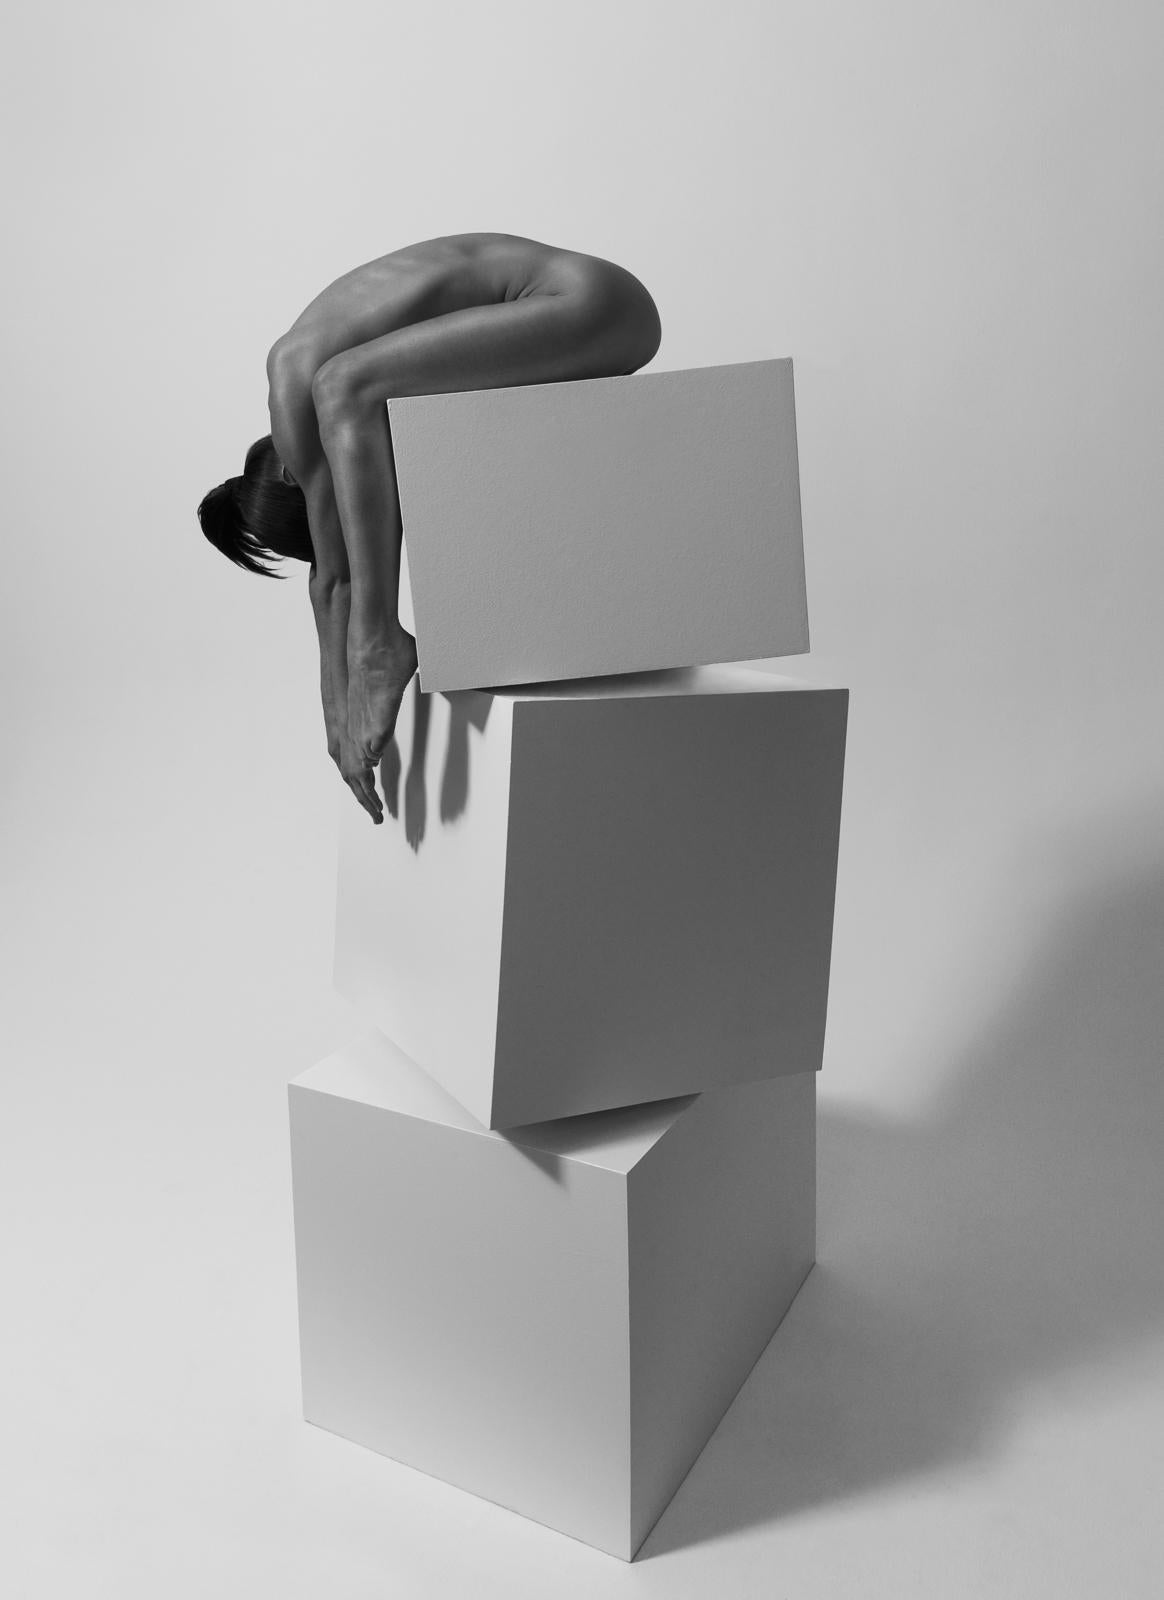 154.08.11 ist eine limitierte Auflage der Fotografie des zeitgenössischen Künstlers Klaus Kampert. Es gehört zu der Reihe "Tanz der Würfel". Um typografischen Schriftzeichen zu ähneln, stellt Klaus Kampert seine Modelle in dieser Serie auf fast